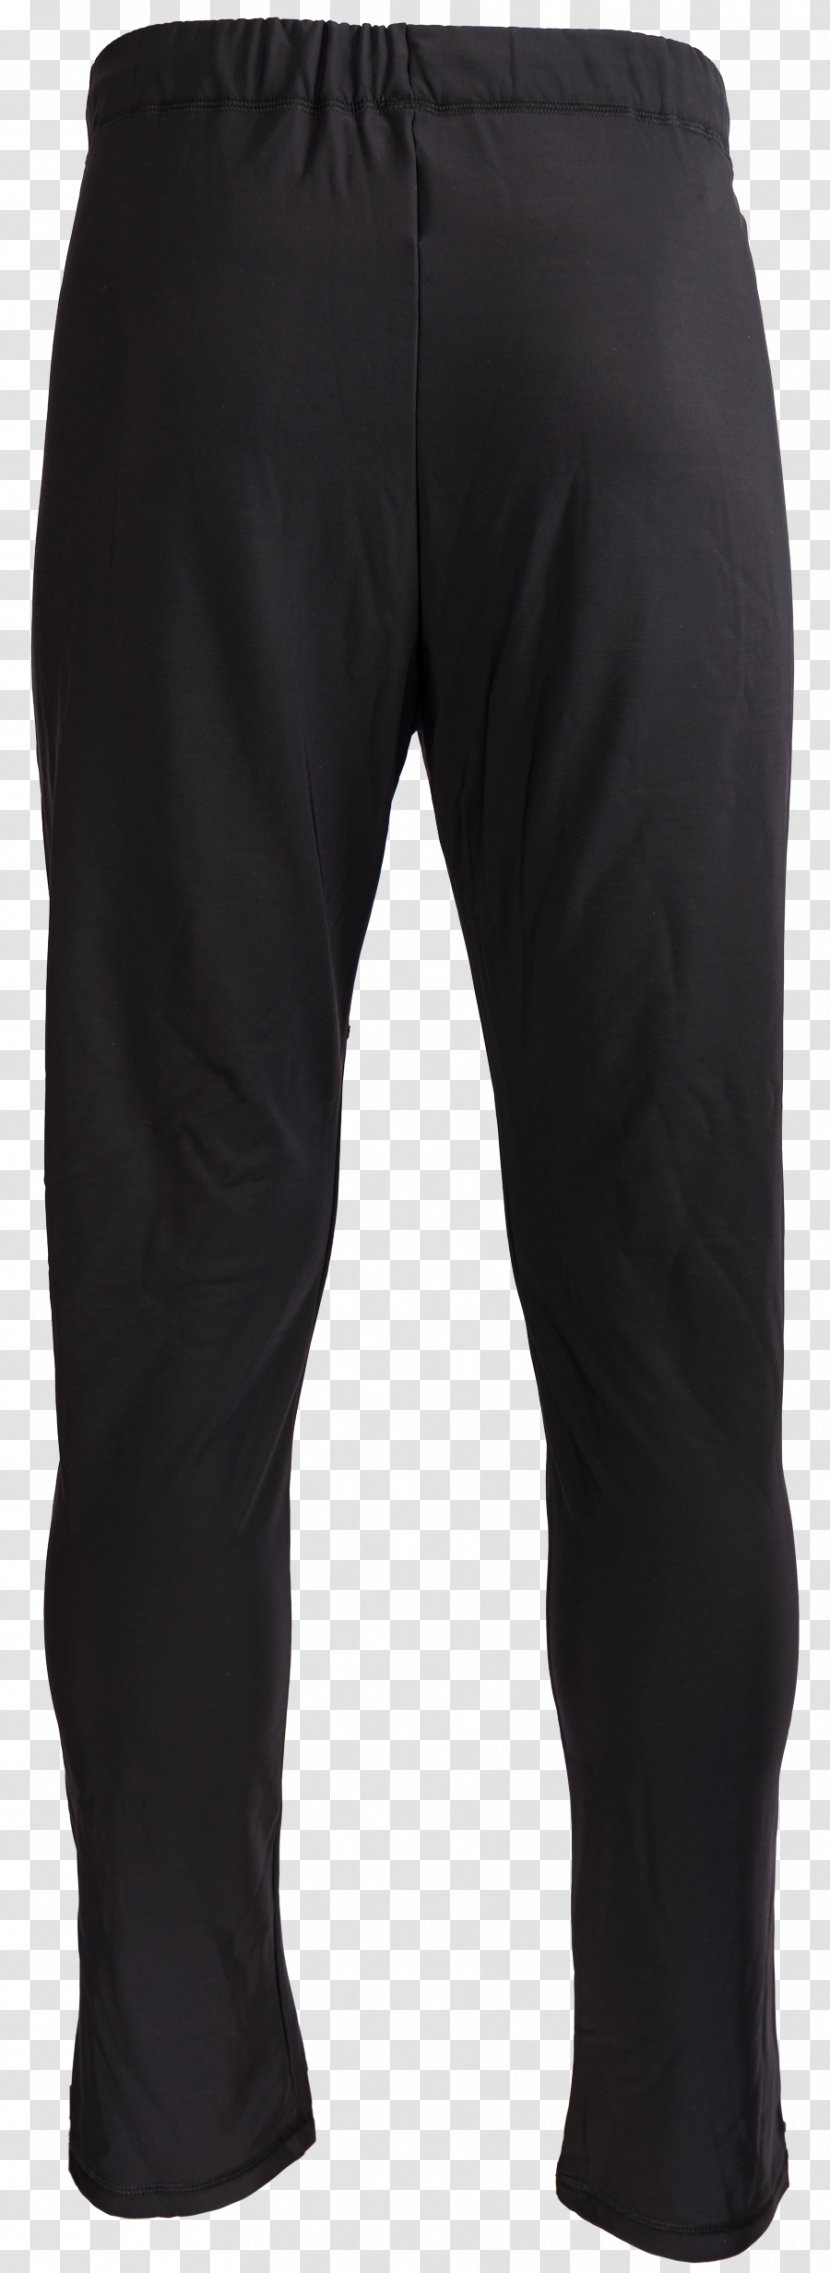 Waist Pants Black M - Shorts - Men Transparent PNG